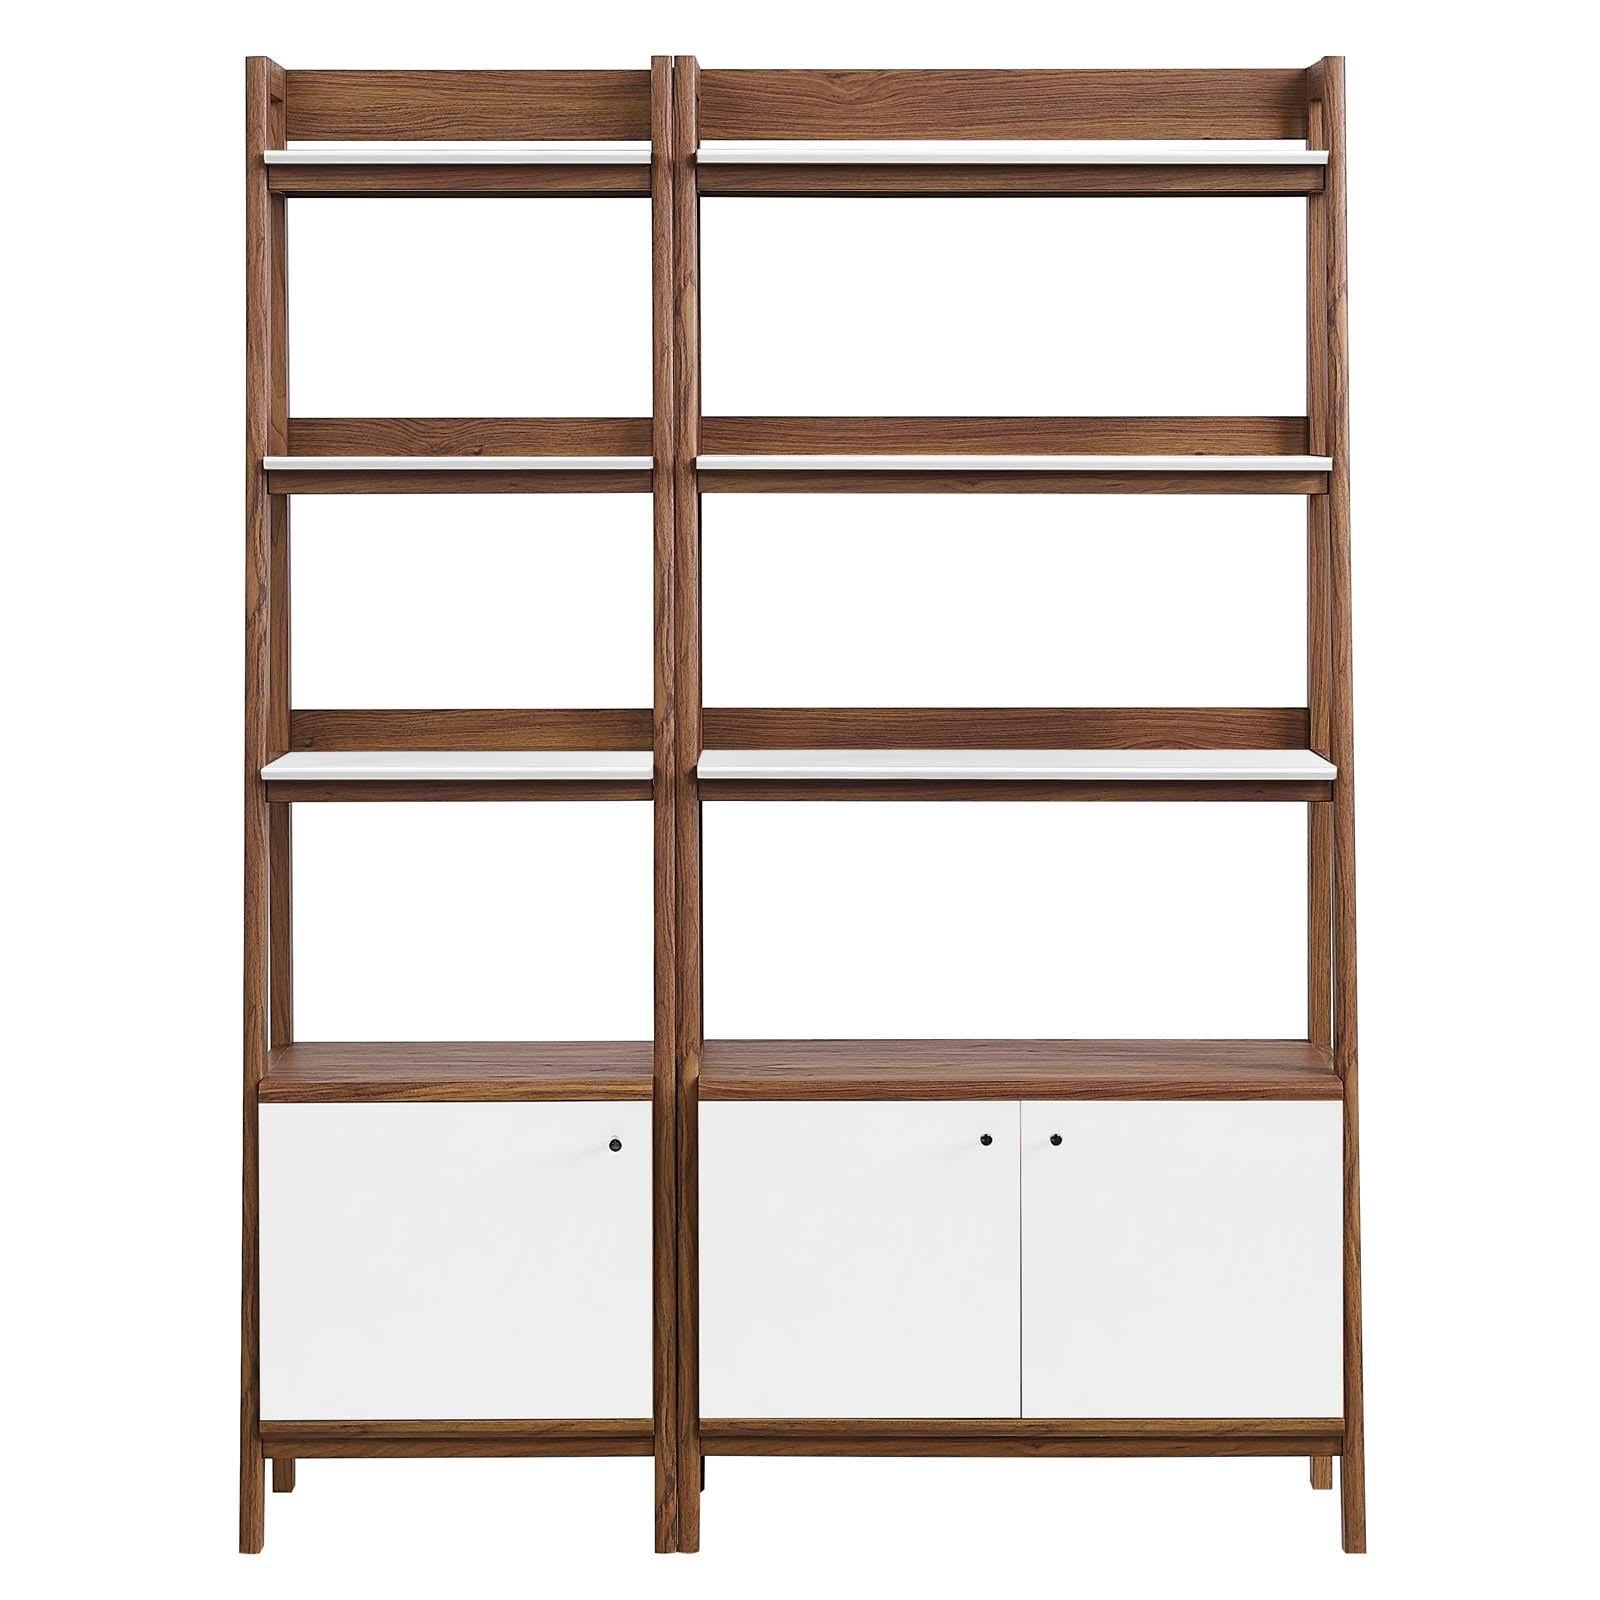 Modway Furniture Modern Bixby Wood Bookshelves - Set of 2 - EEI-6113